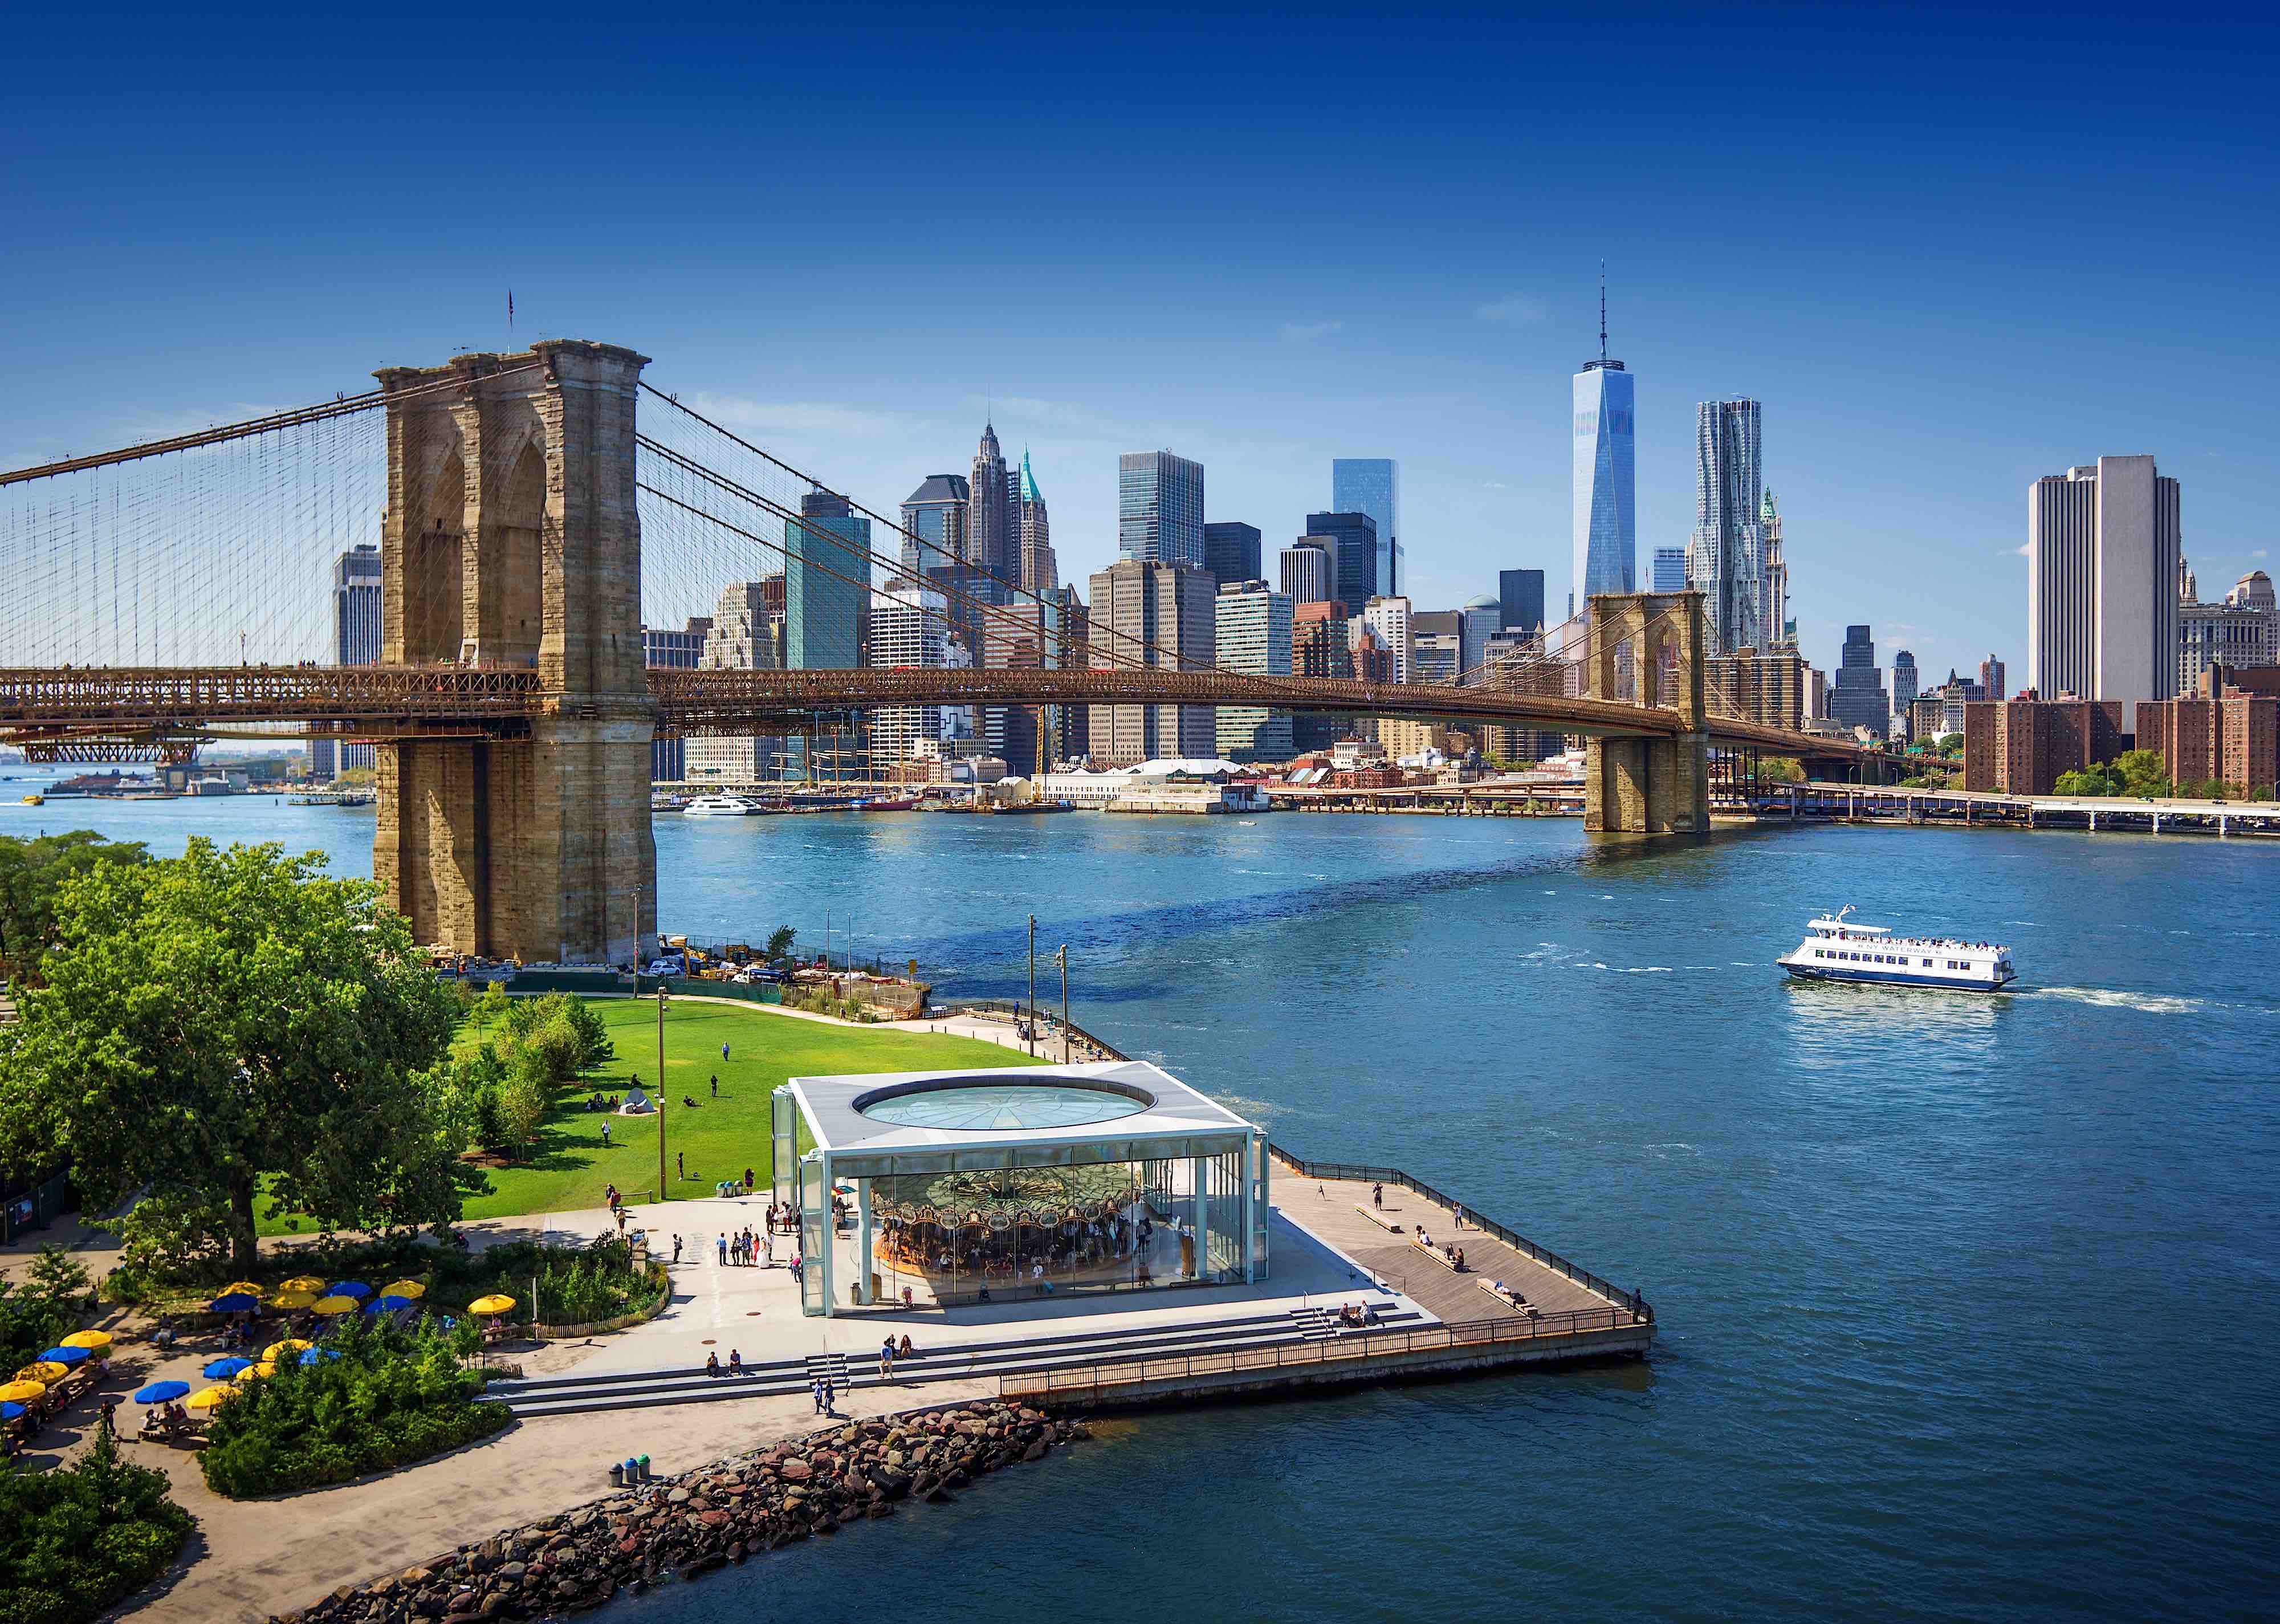 Brooklyn Bridge amd Manhattan